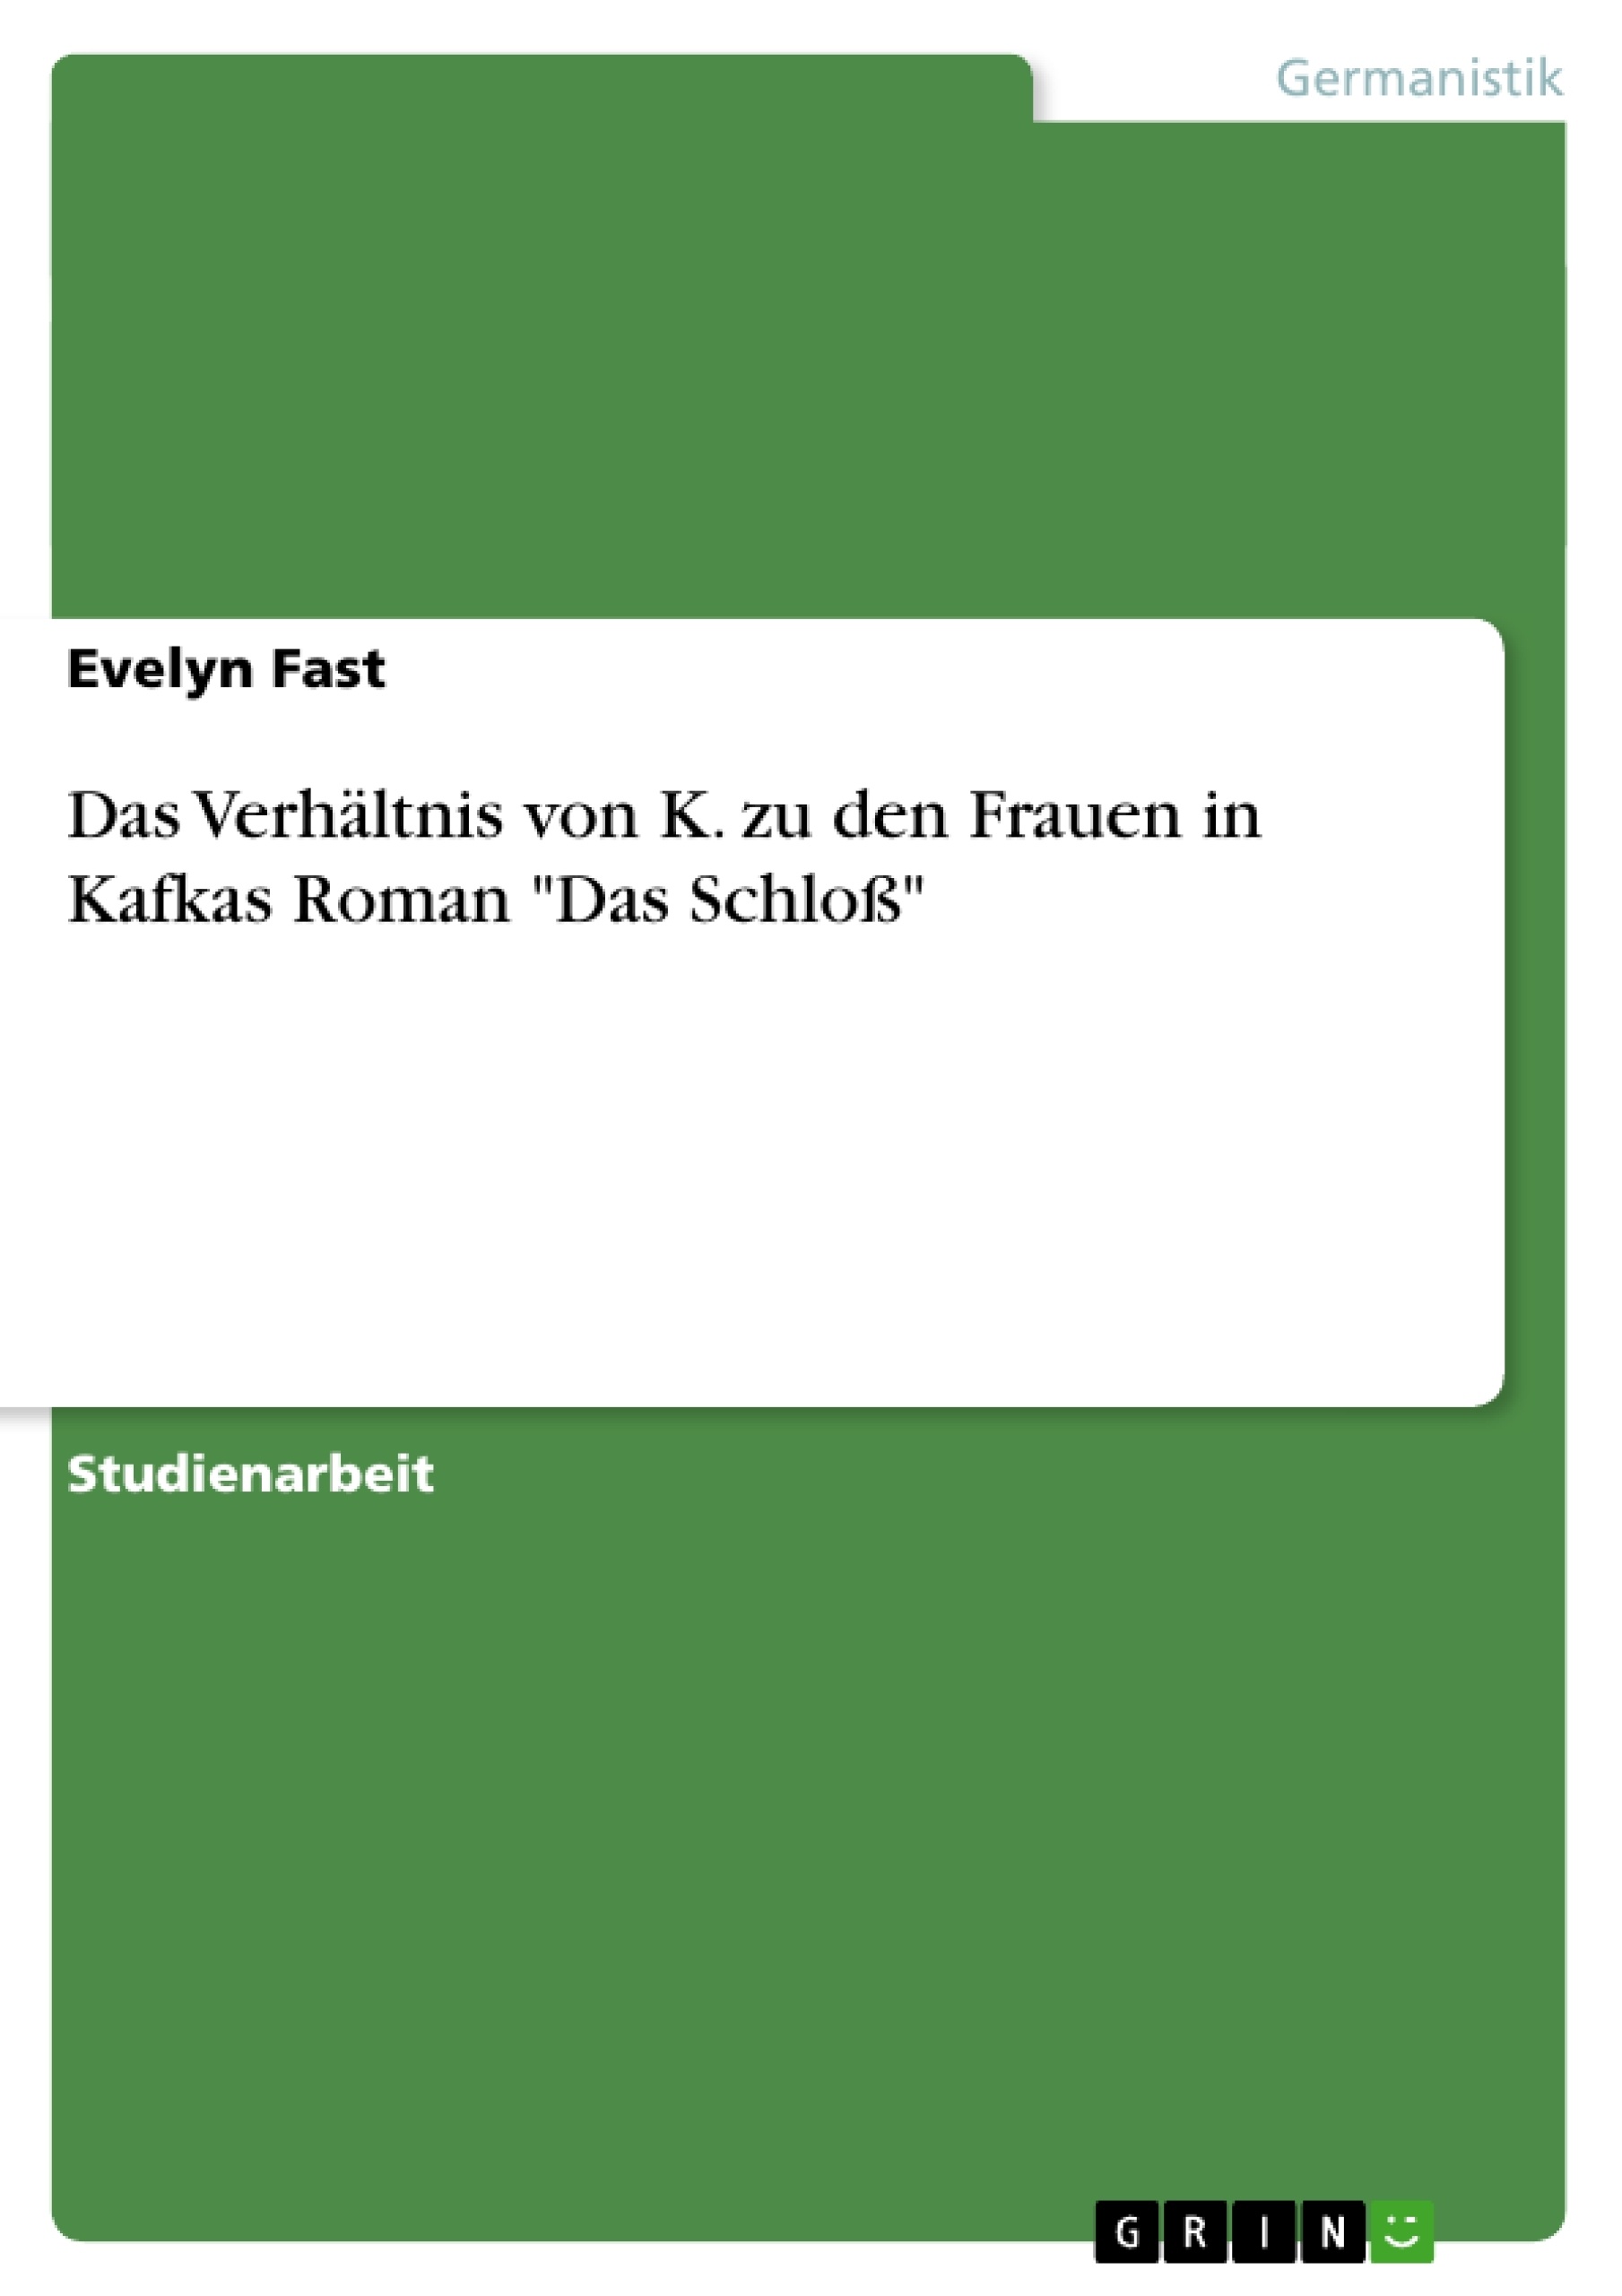 Título: Das Verhältnis von K. zu den Frauen in Kafkas Roman "Das Schloß"